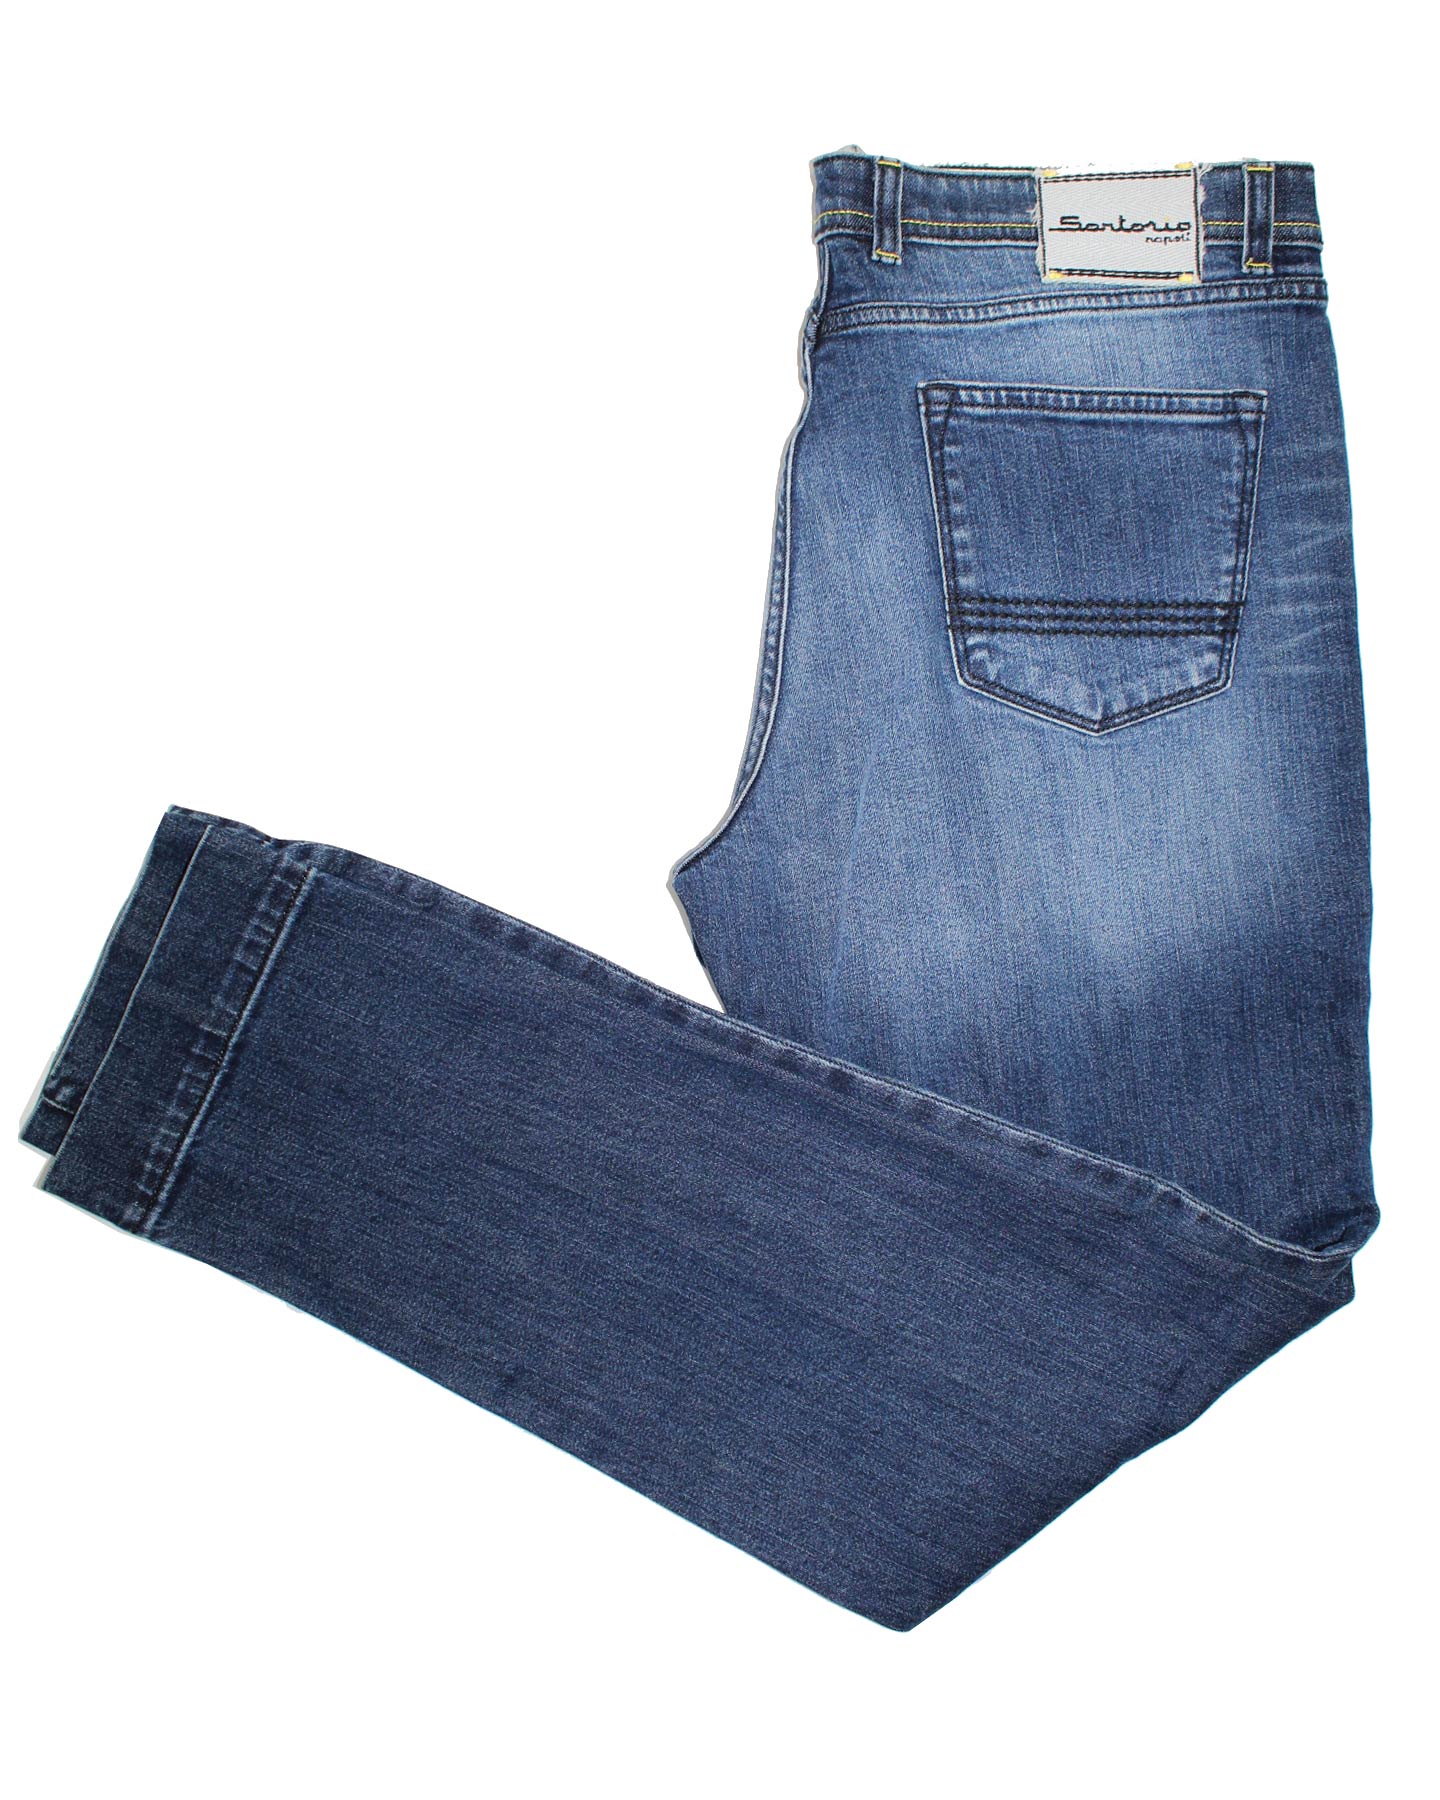 Sartorio Jeans Dark Denim Blue Slim Fit Button Fly 40